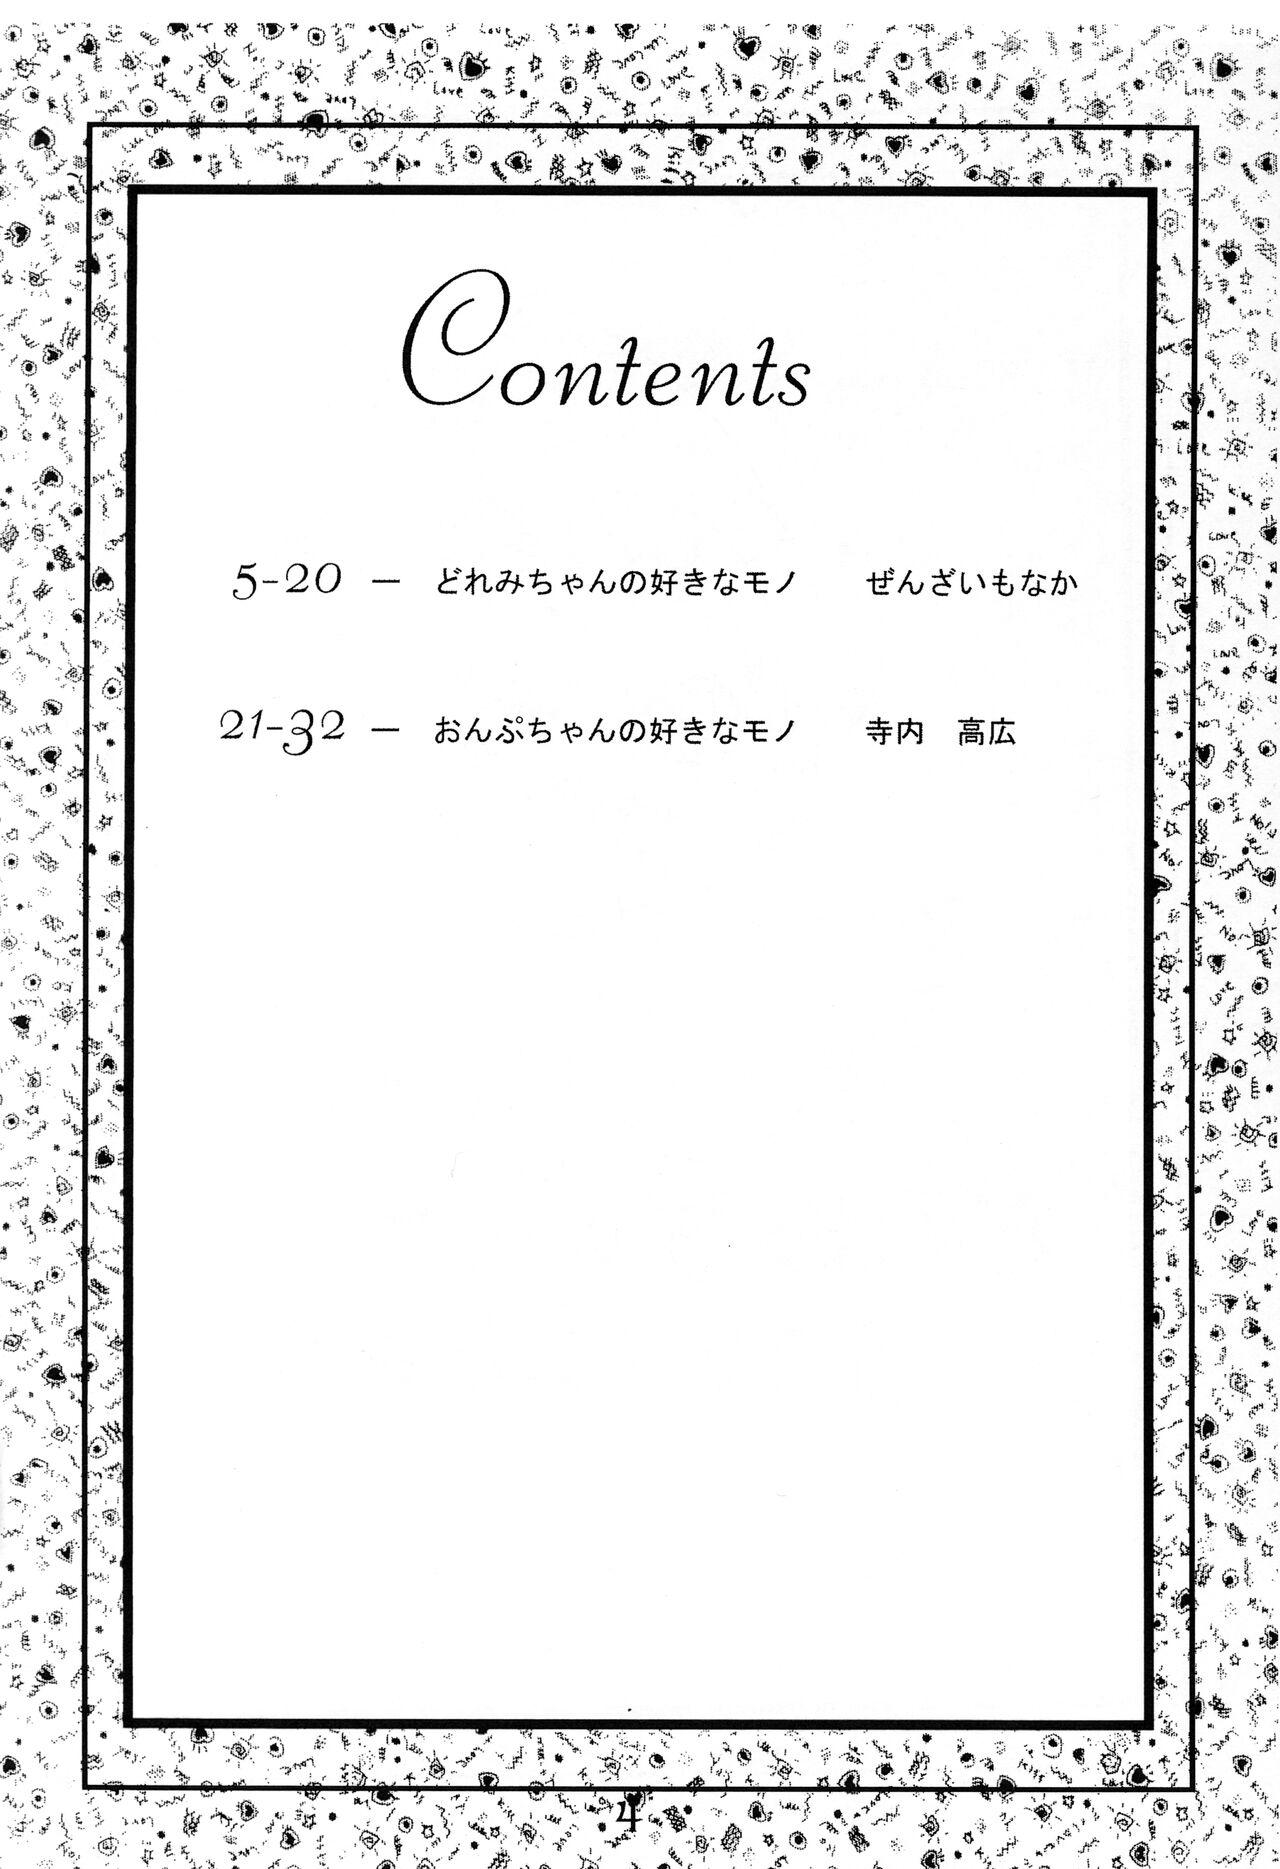 Dicks (Puniket 4) [Hiyashi Chuuka Hajimemashita (Zenzai Monaka, Terauchi Takahiro)] Doremi-chan wa Watahi no Mono 1 Onpu-hen (Ojamajo Doremi) - Ojamajo doremi | magical doremi Roludo - Page 3